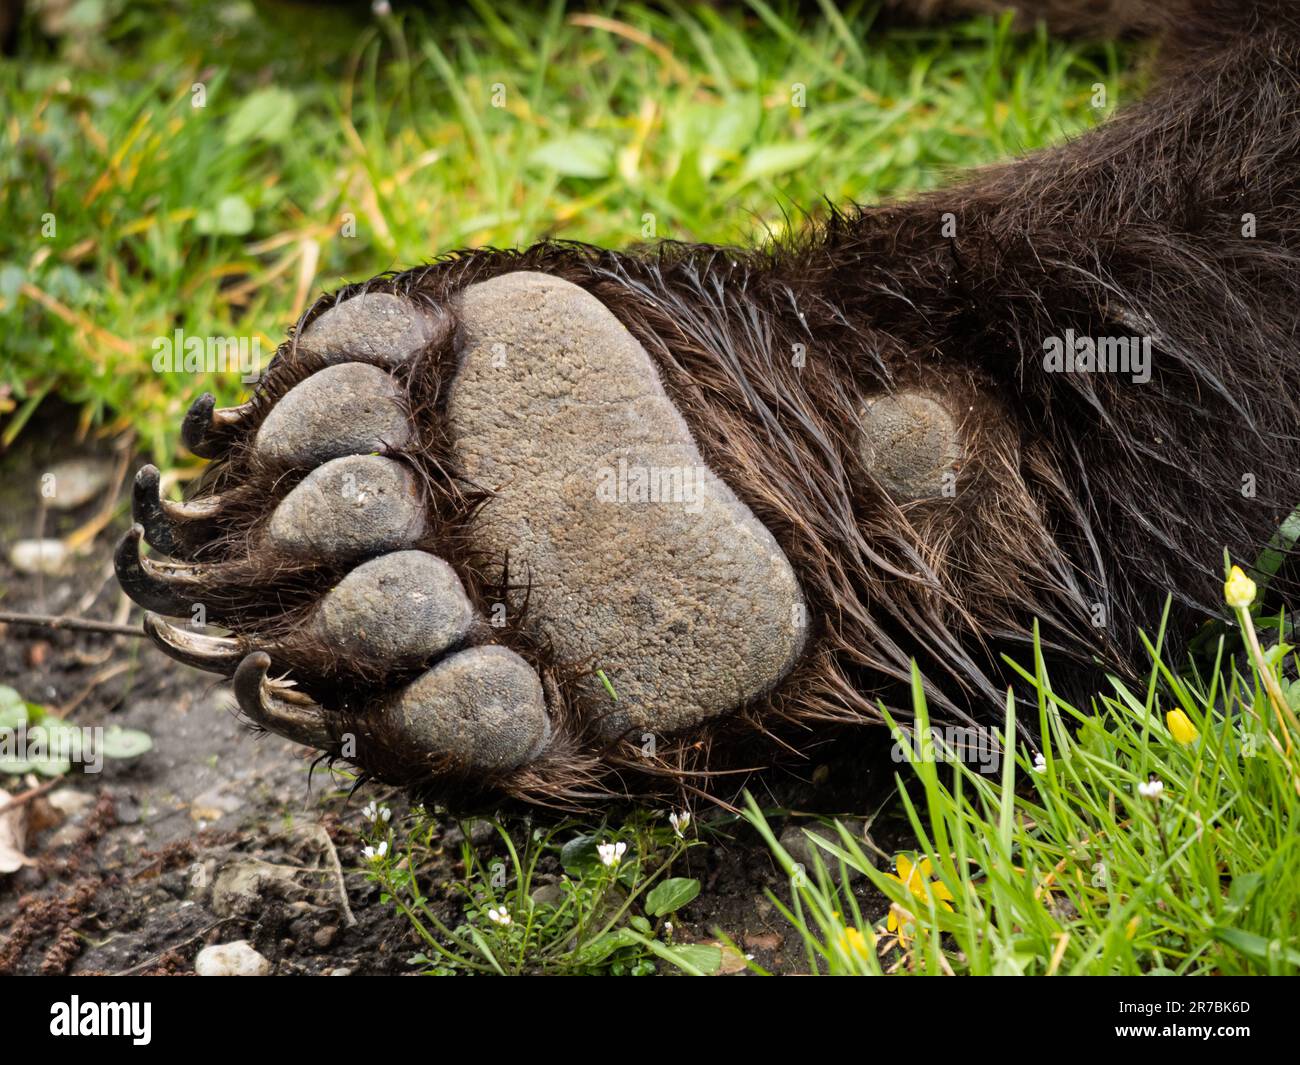 Die Vorpfote eines Braunbären (Ursus arctos). Pfote mit Klauen auf grünem Gras. Nahaufnahme des vorderen Beins mit nassem Fell. Stockfoto